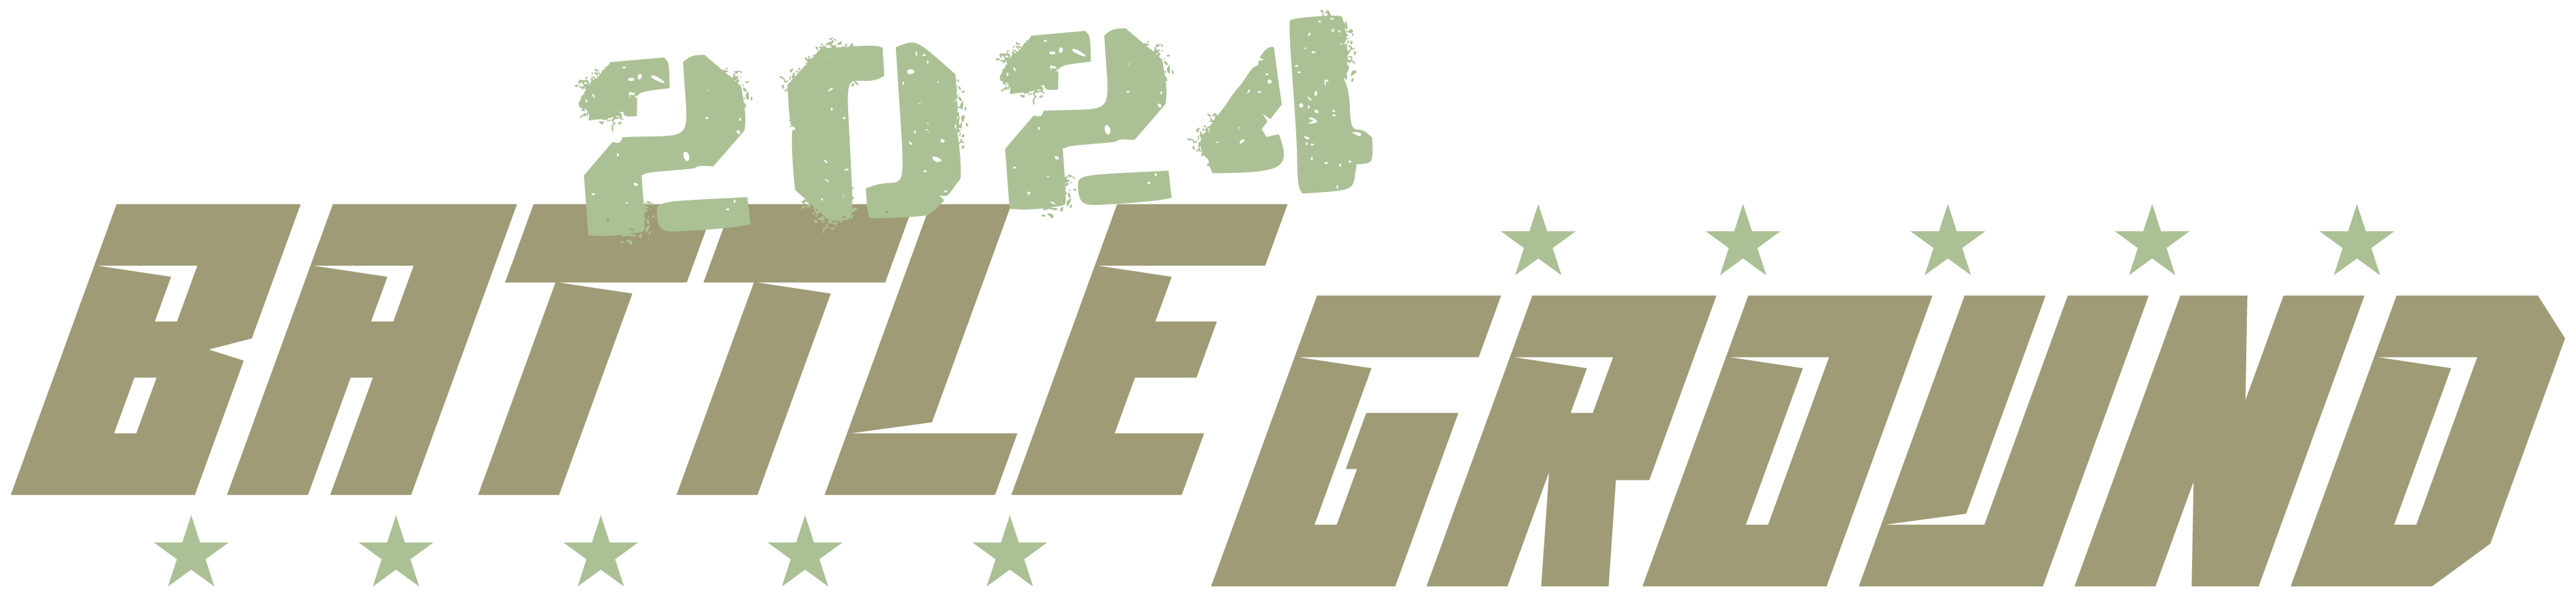 24BG Logo Reverse 